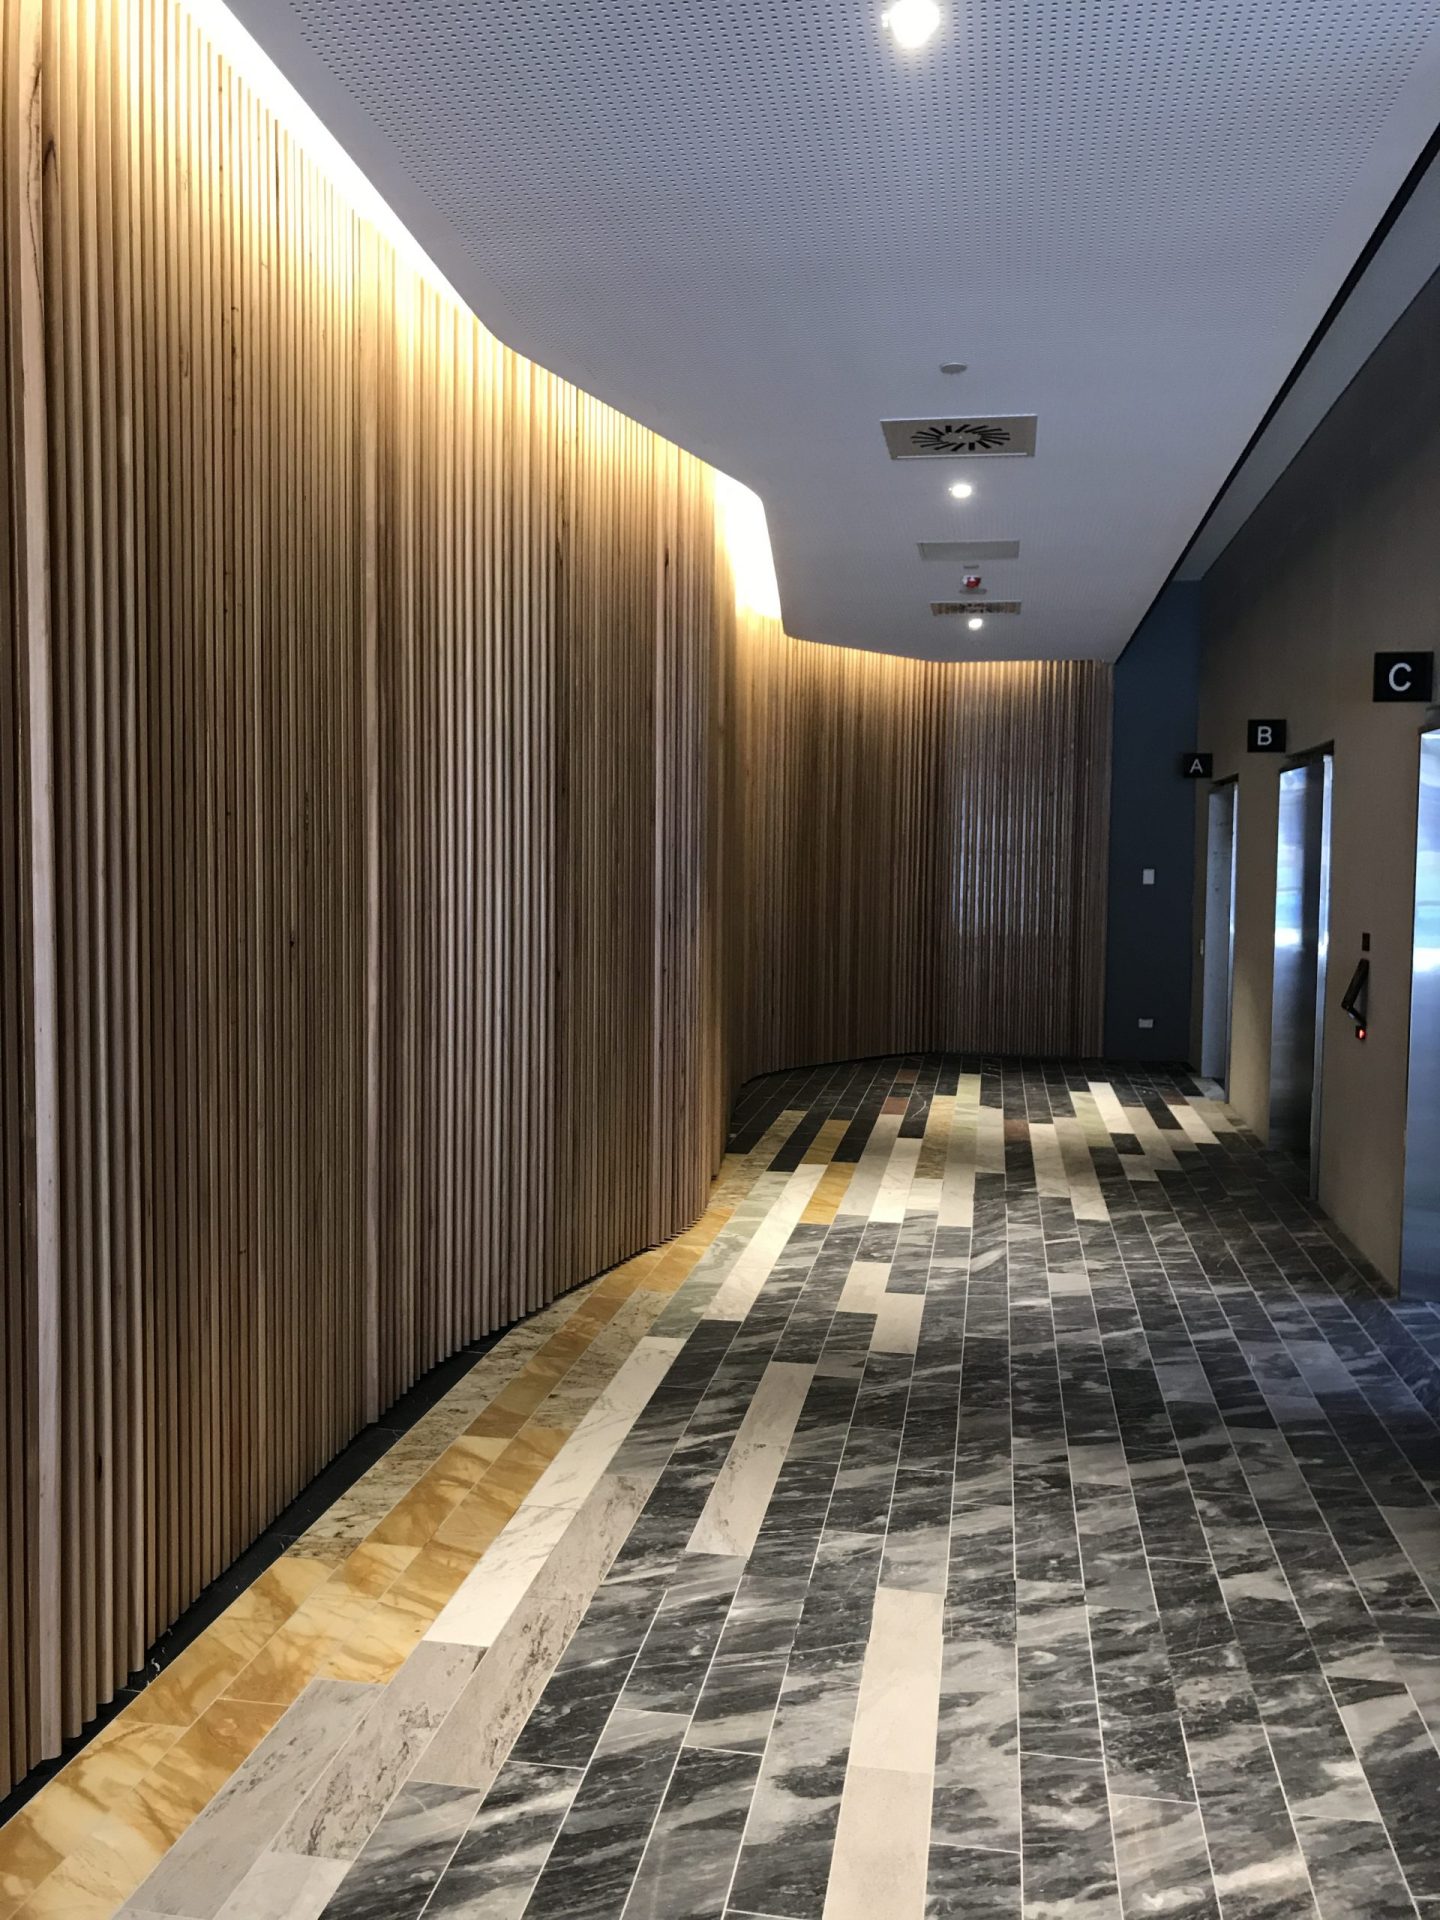 A tiled hallway inside a building